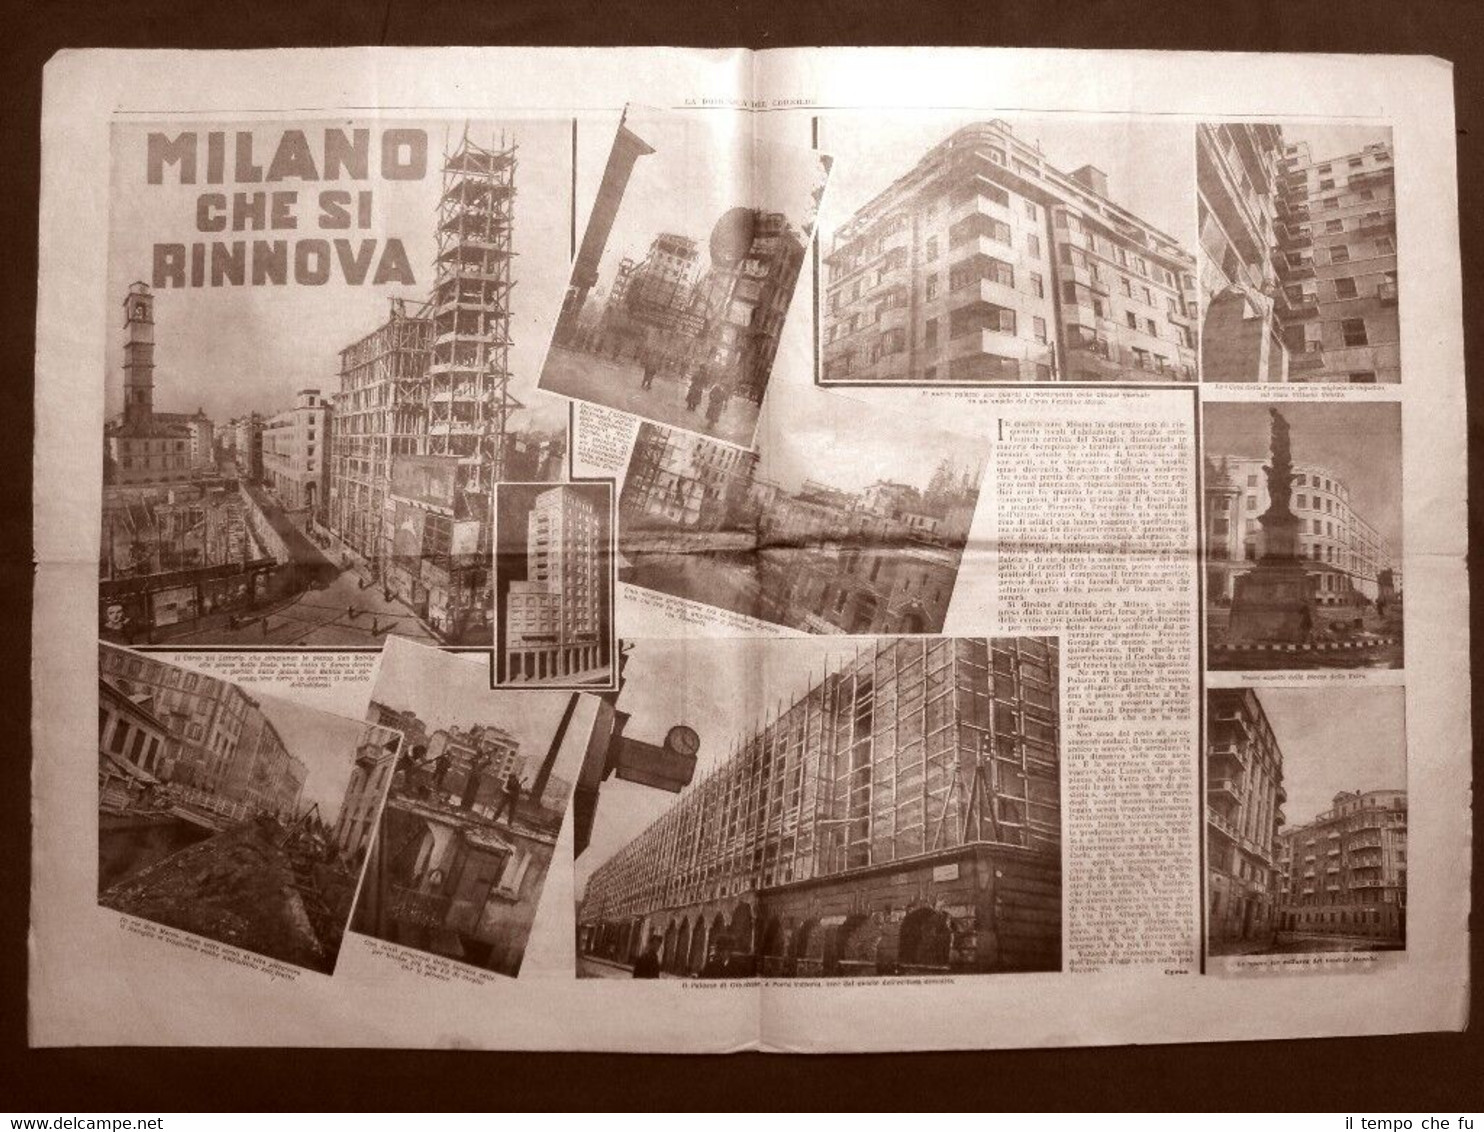 Stampa del 1936 Milano che si rinnova e Soldati in …